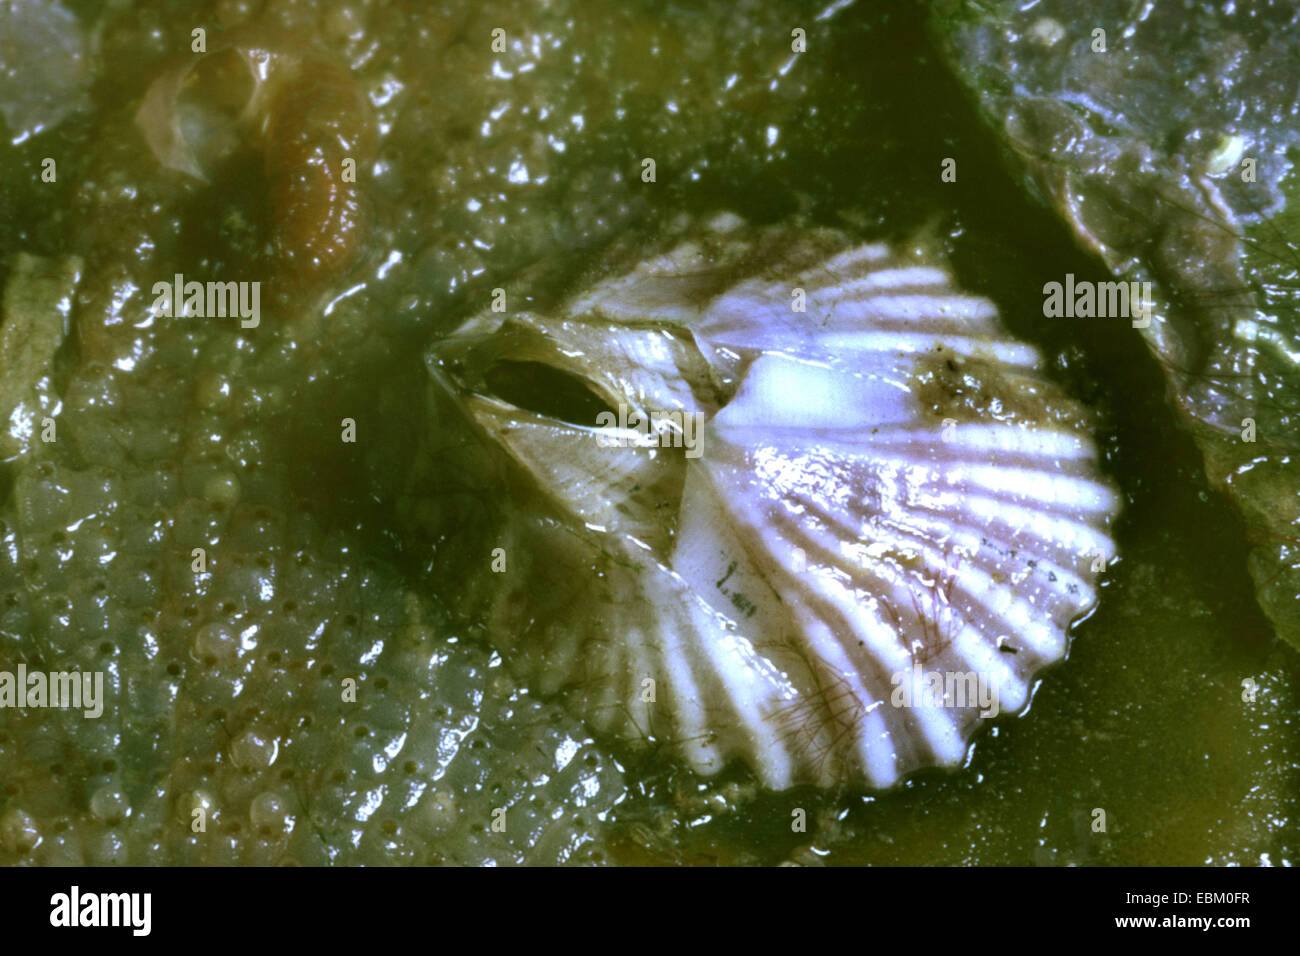 giant Chilean barnacle (Megabalanus tintinnabulum, Balanus tintinnabulum), closeup Stock Photo